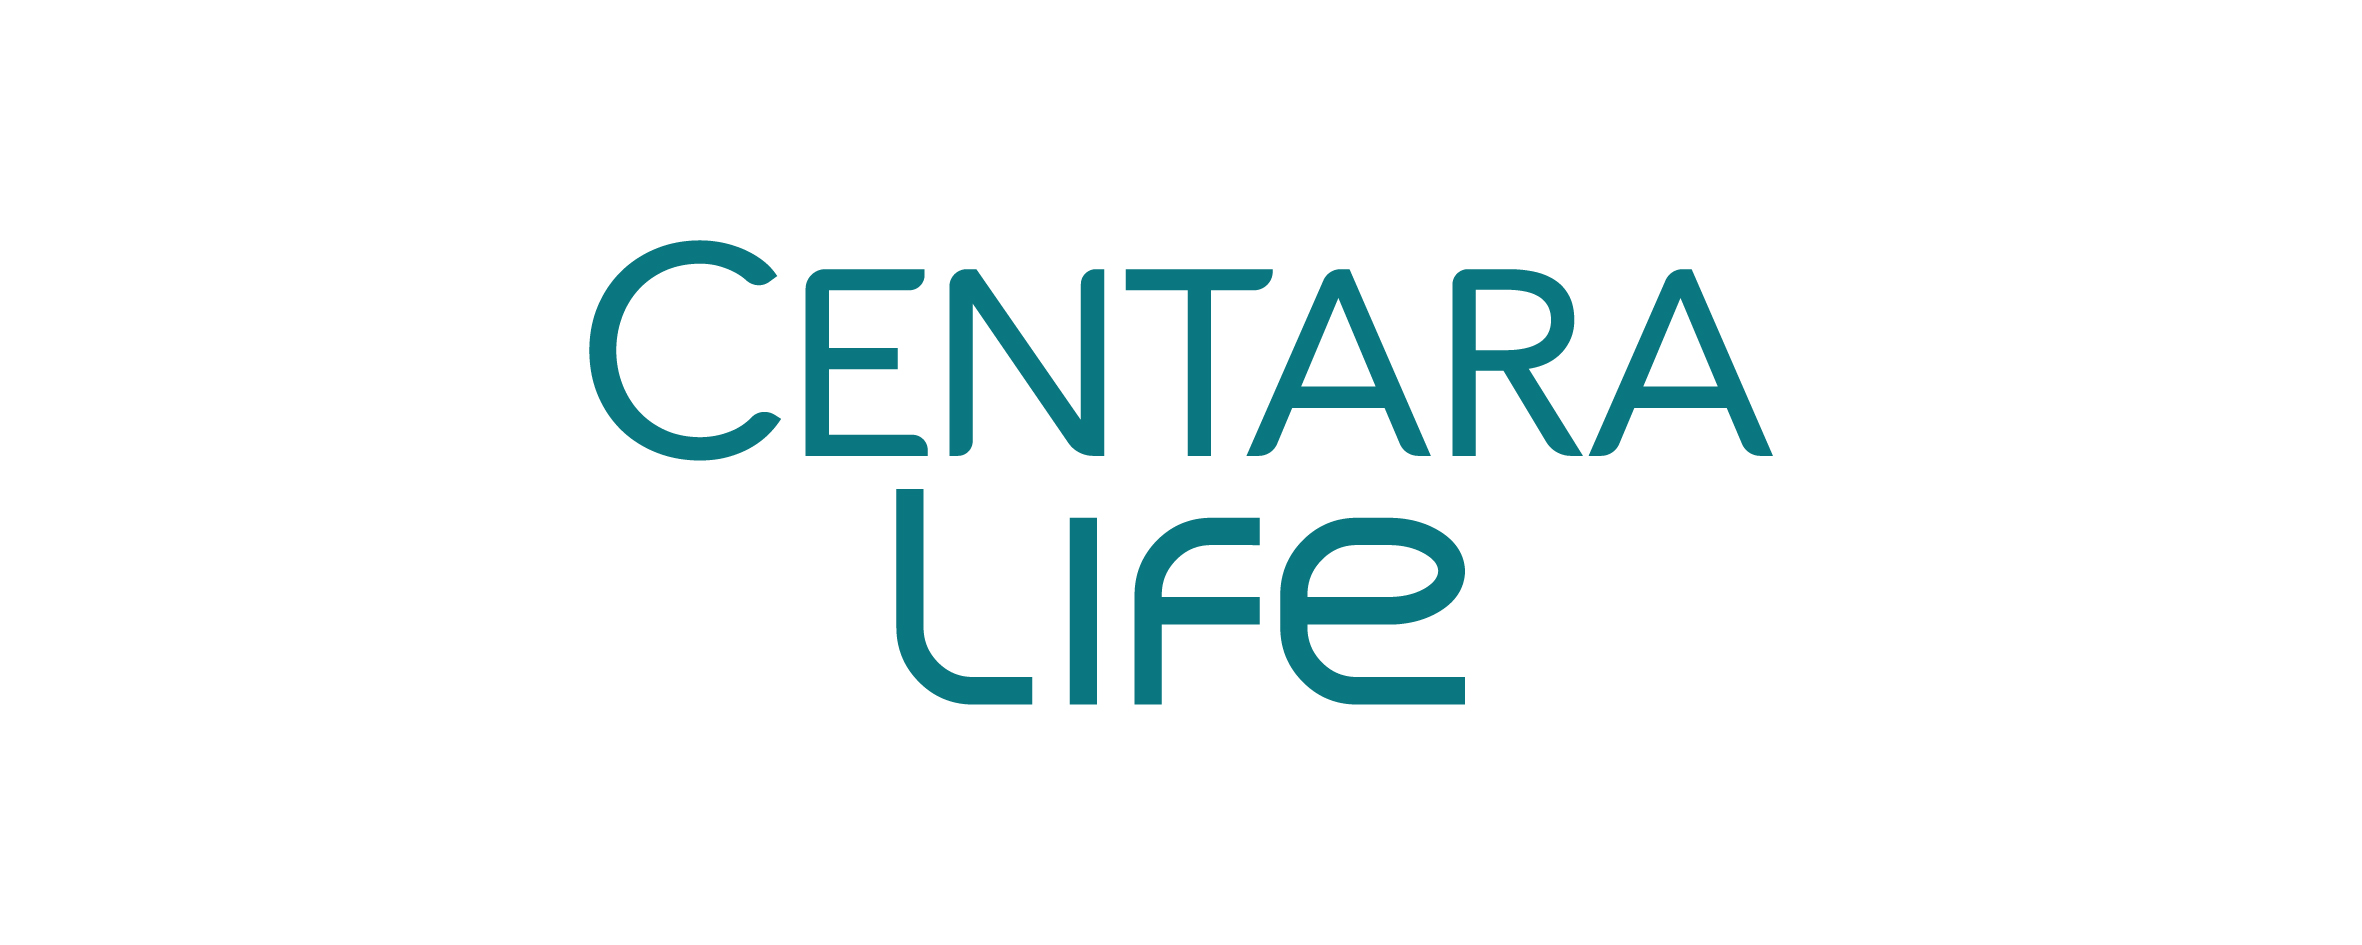 centara-life-logo.jpg